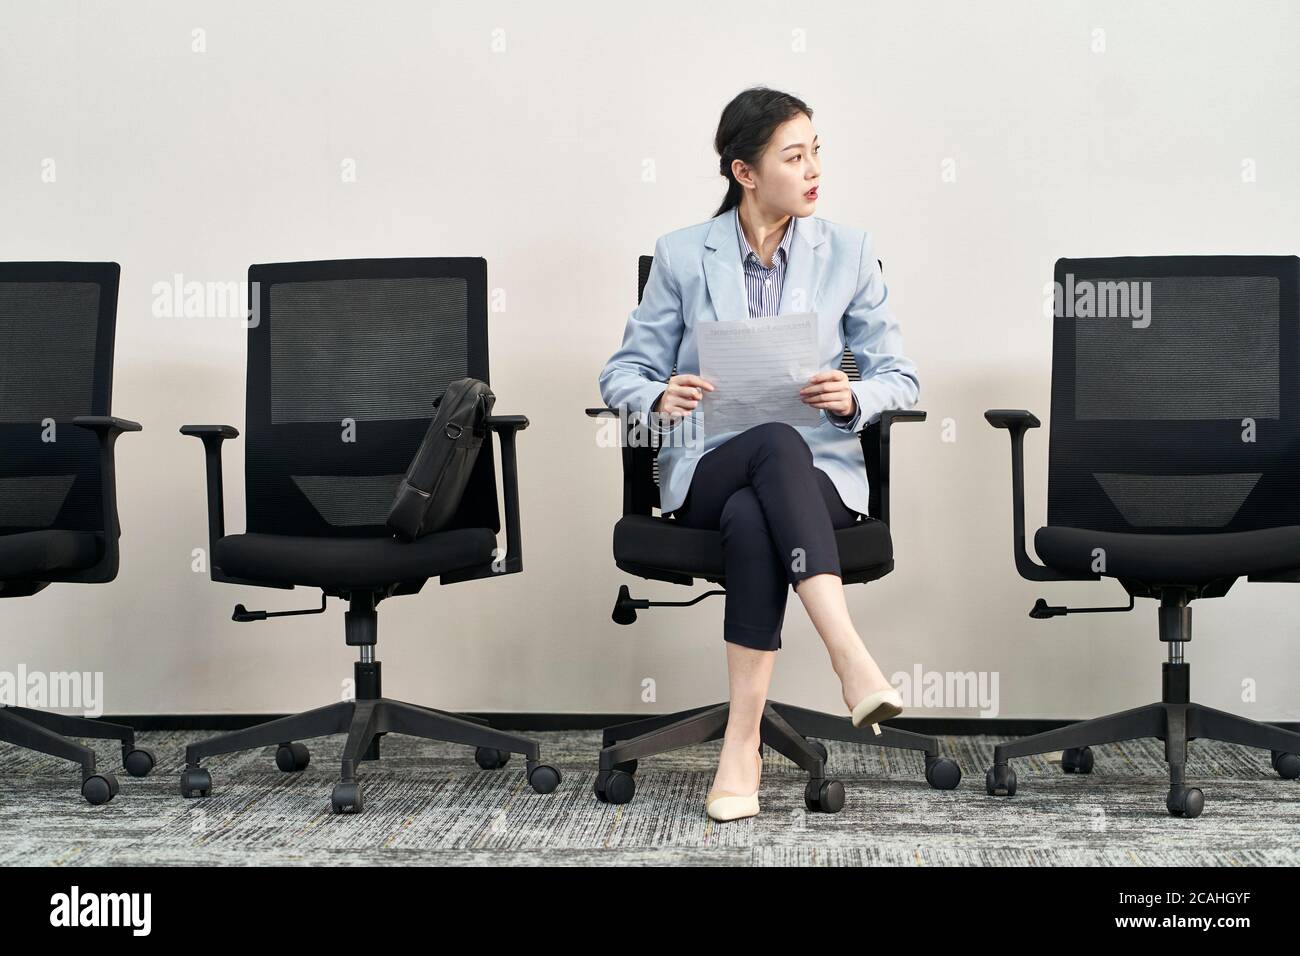 une jeune femme asiatique qui recherche un emploi est assise dans une chaise et attend avec impatience une entrevue Banque D'Images